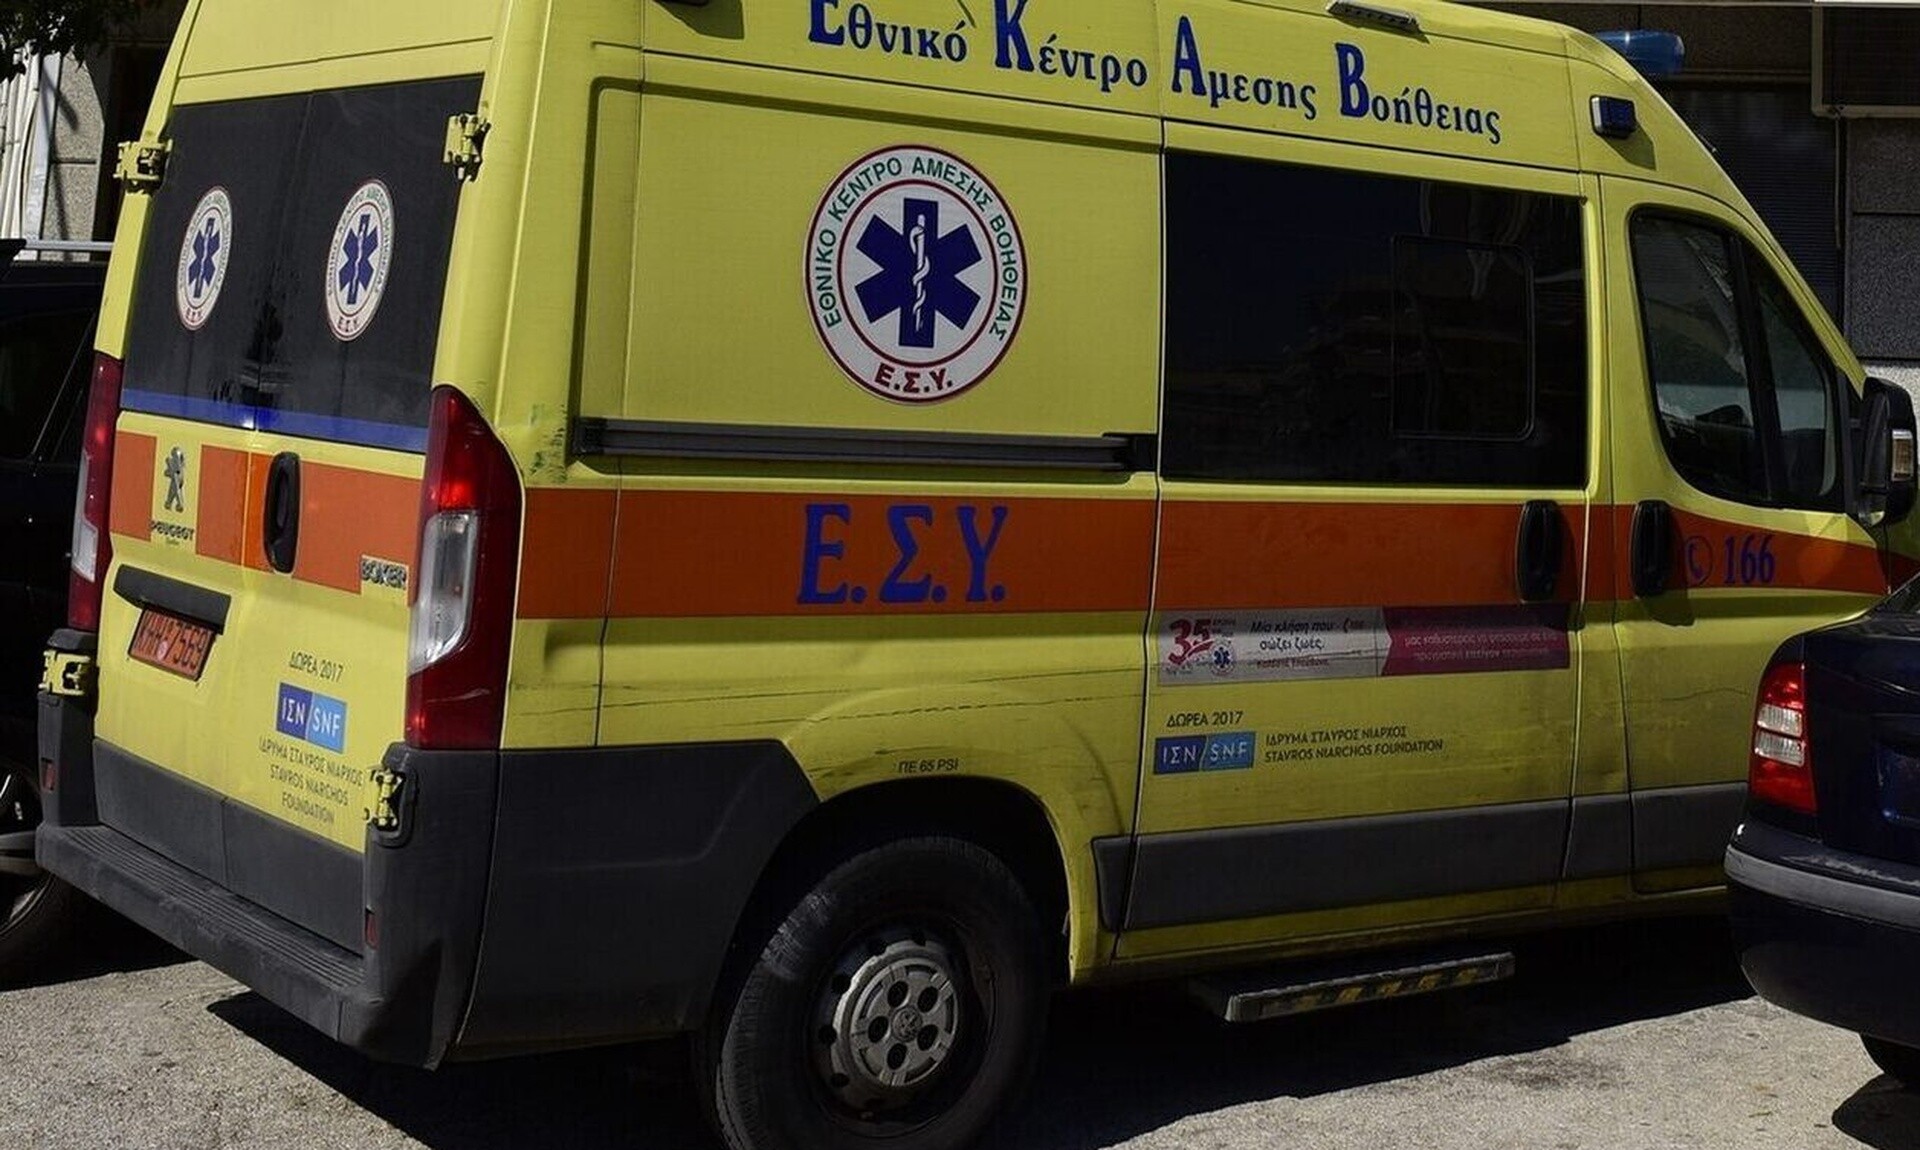 Νέο εργατικό ατύχημα στα Τρίκαλα – Σοβαρός τραυματισμός 59χρονου